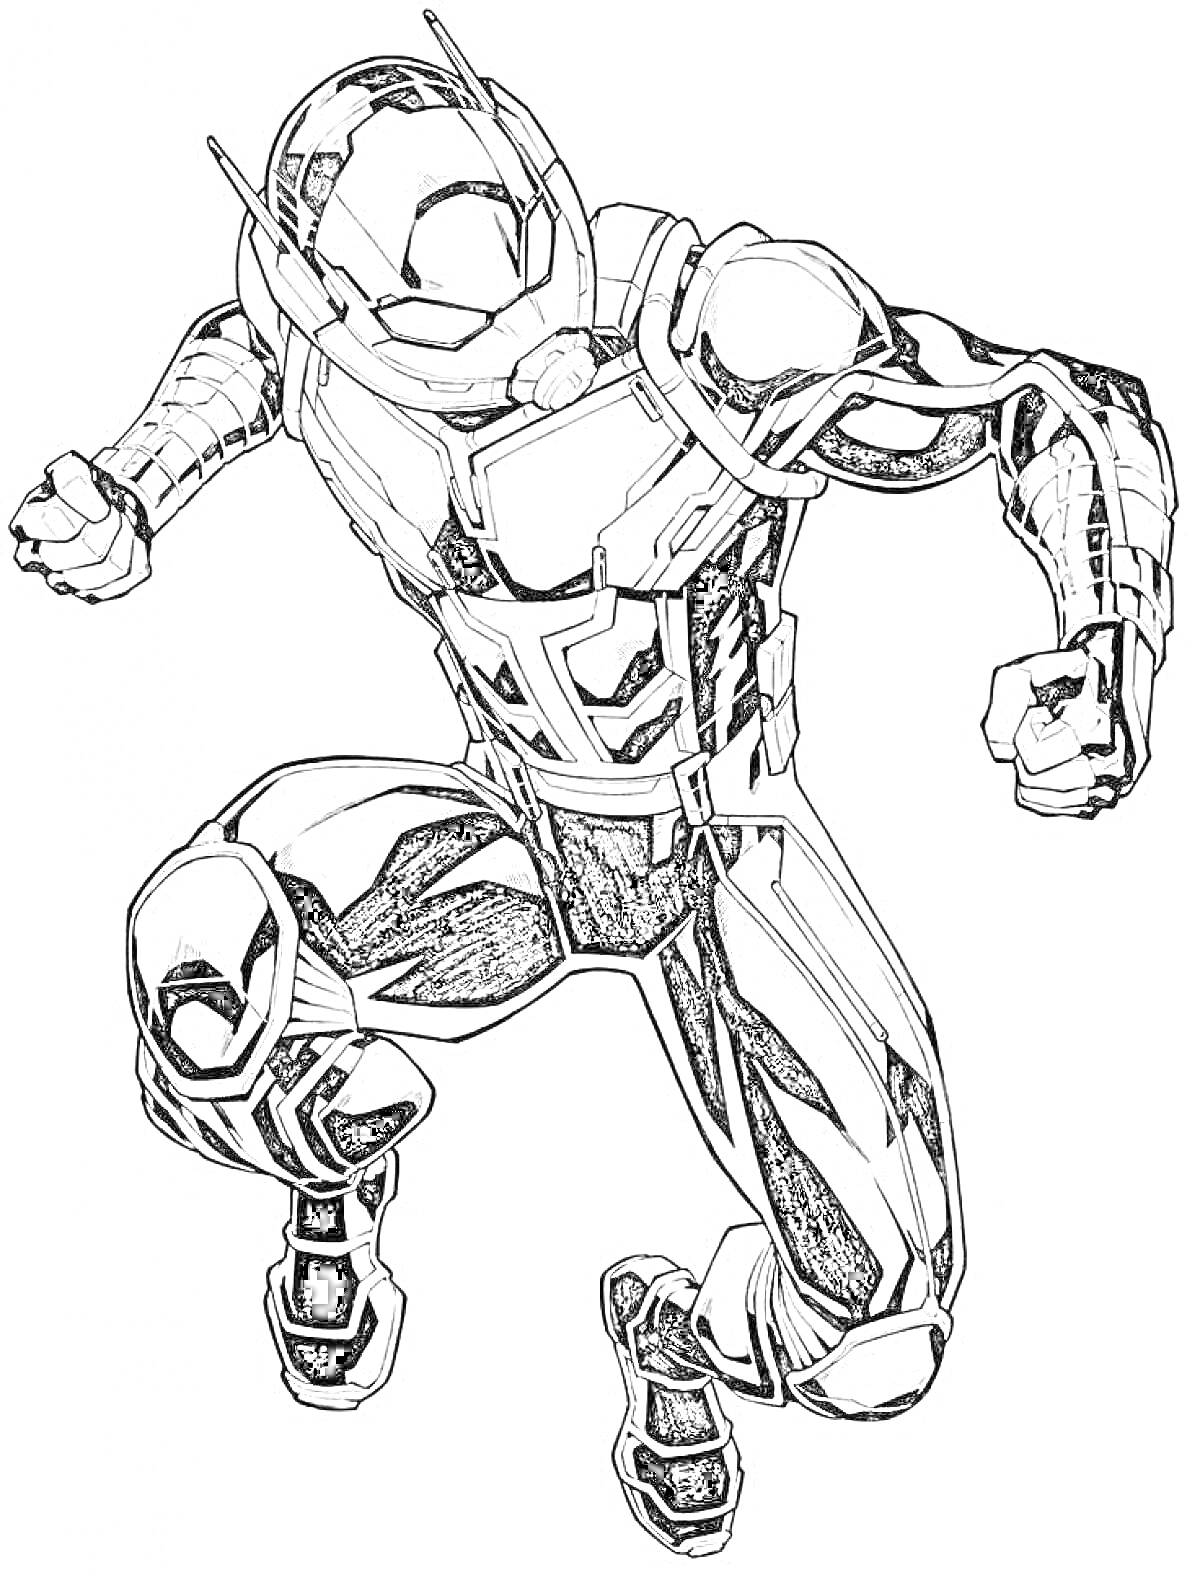 Раскраска Герой Марвел в костюме с шлемом, присевший на одно колено с поднятым кулаком